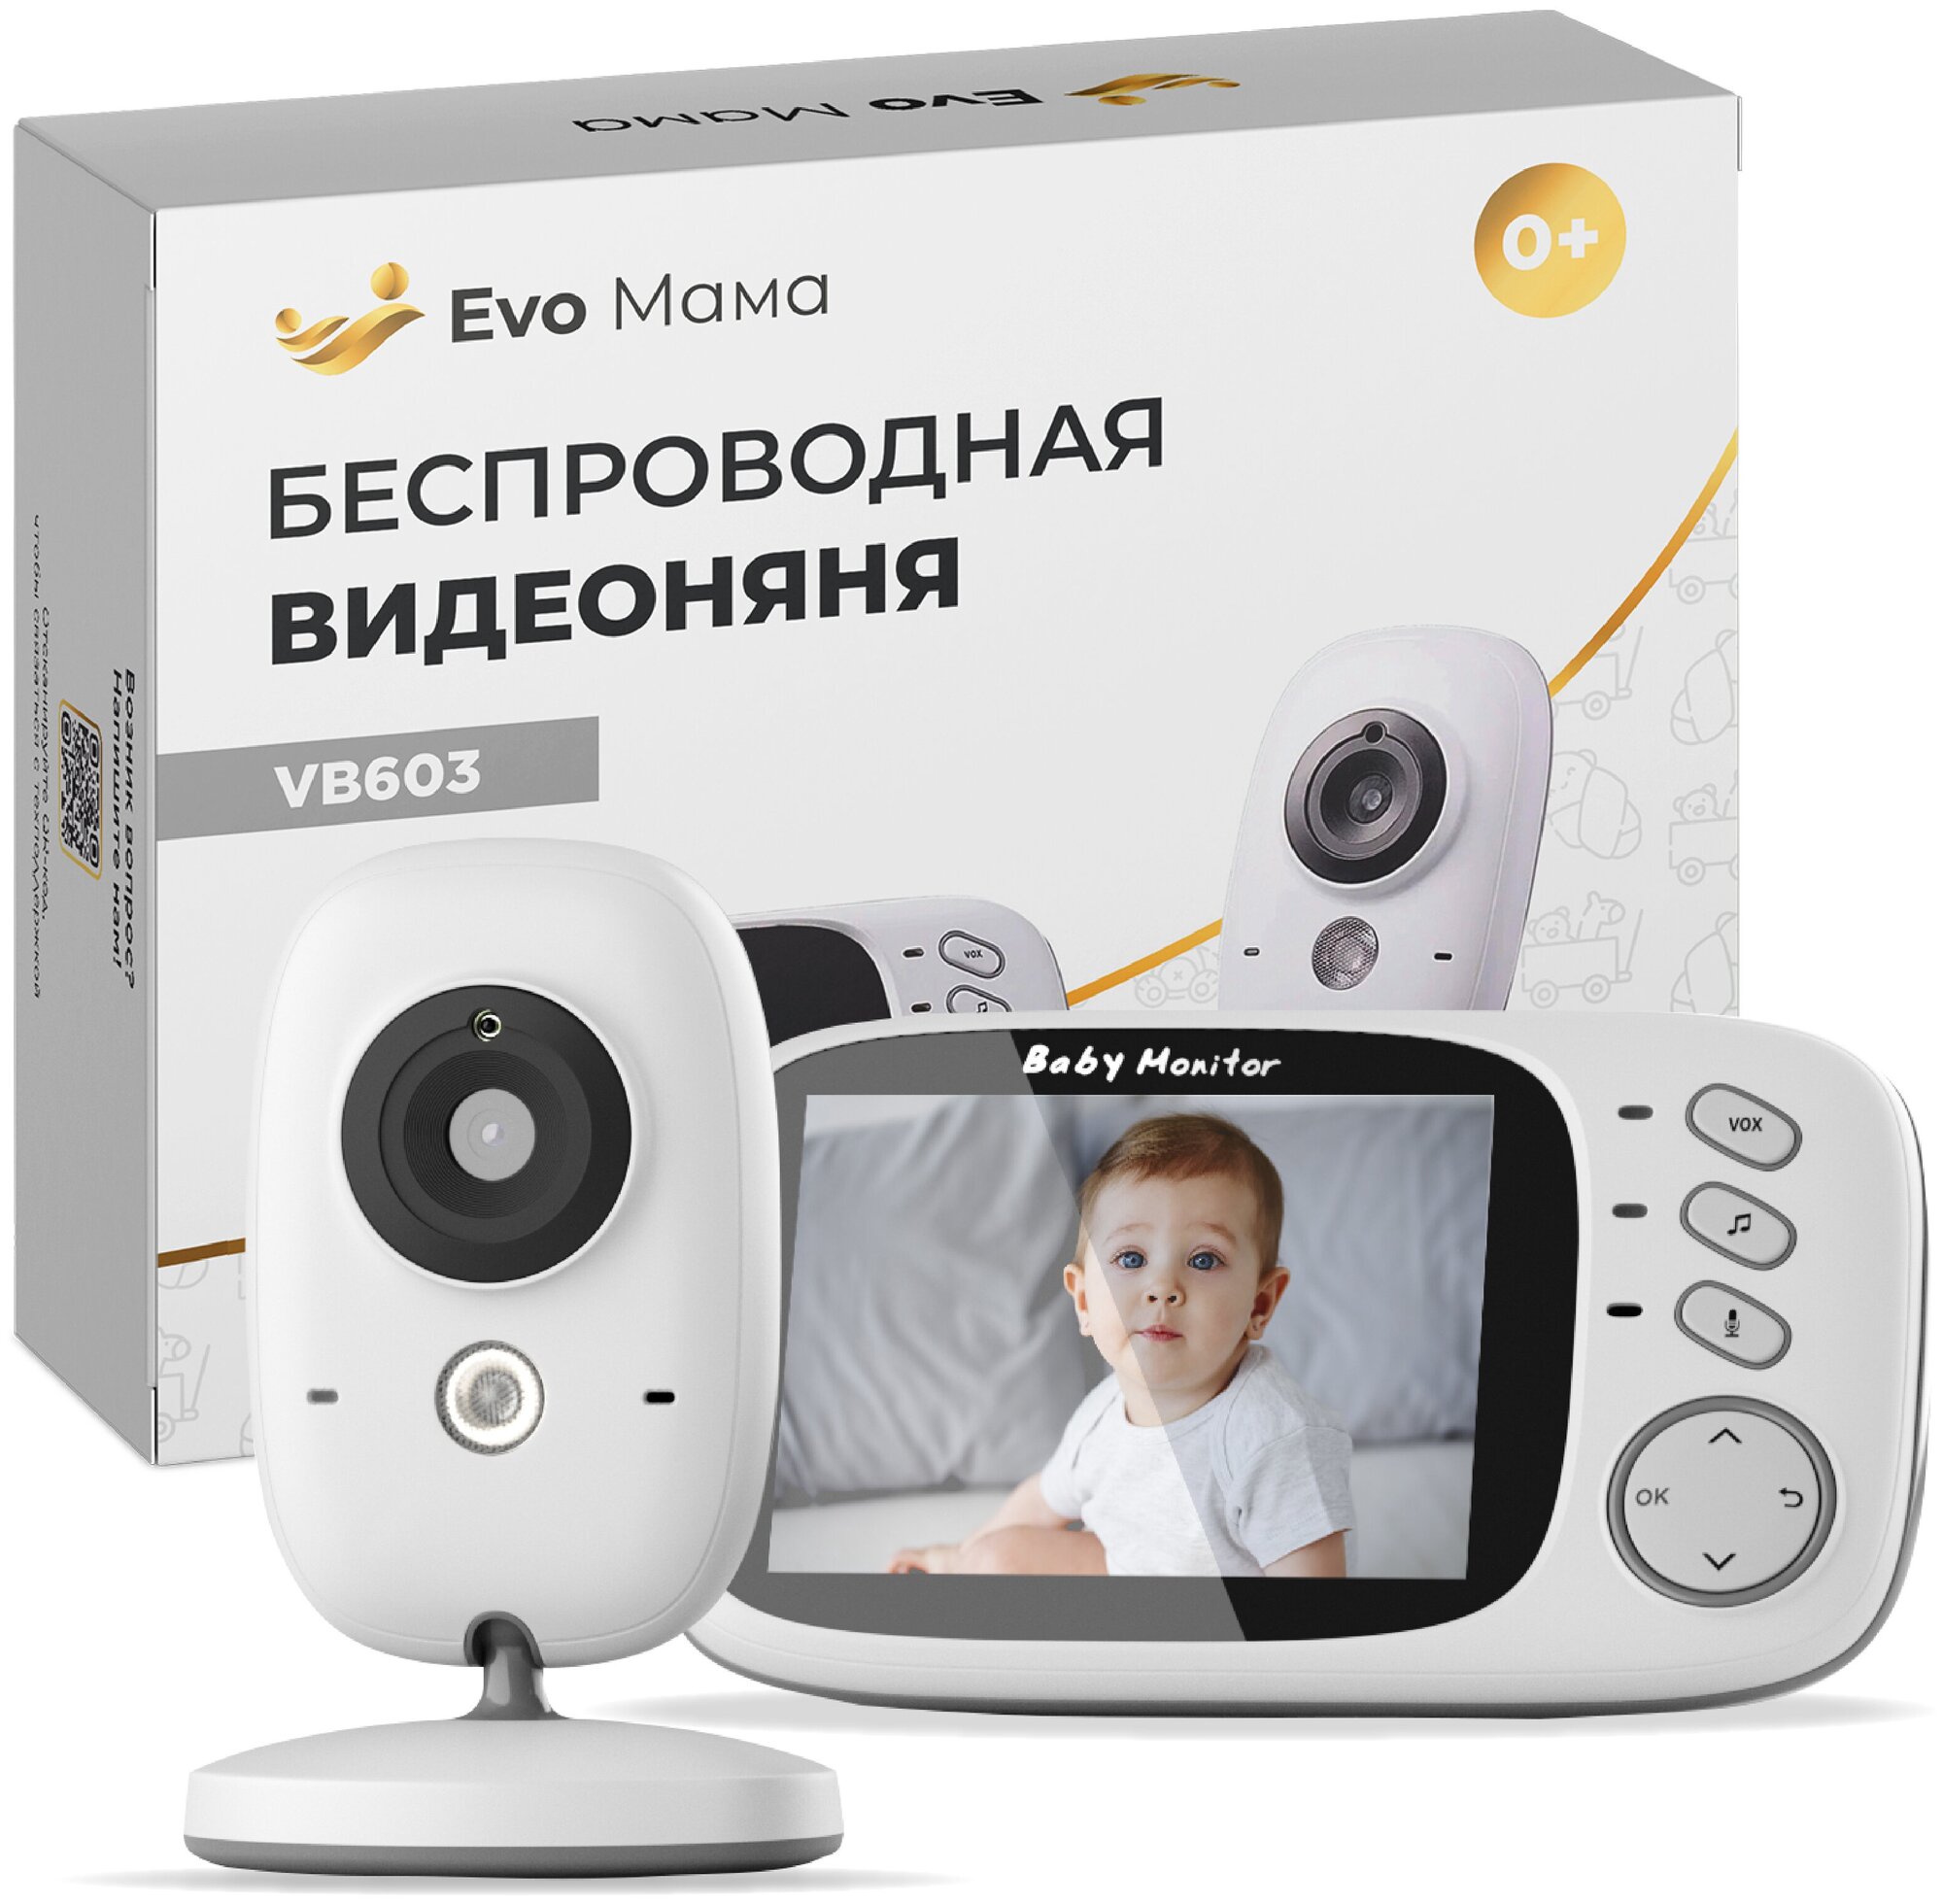 Беспроводная цифровая видеоняня Evo Mama с высоким разрешением ночное видение. Радионяня с камерой и двусторонней связью